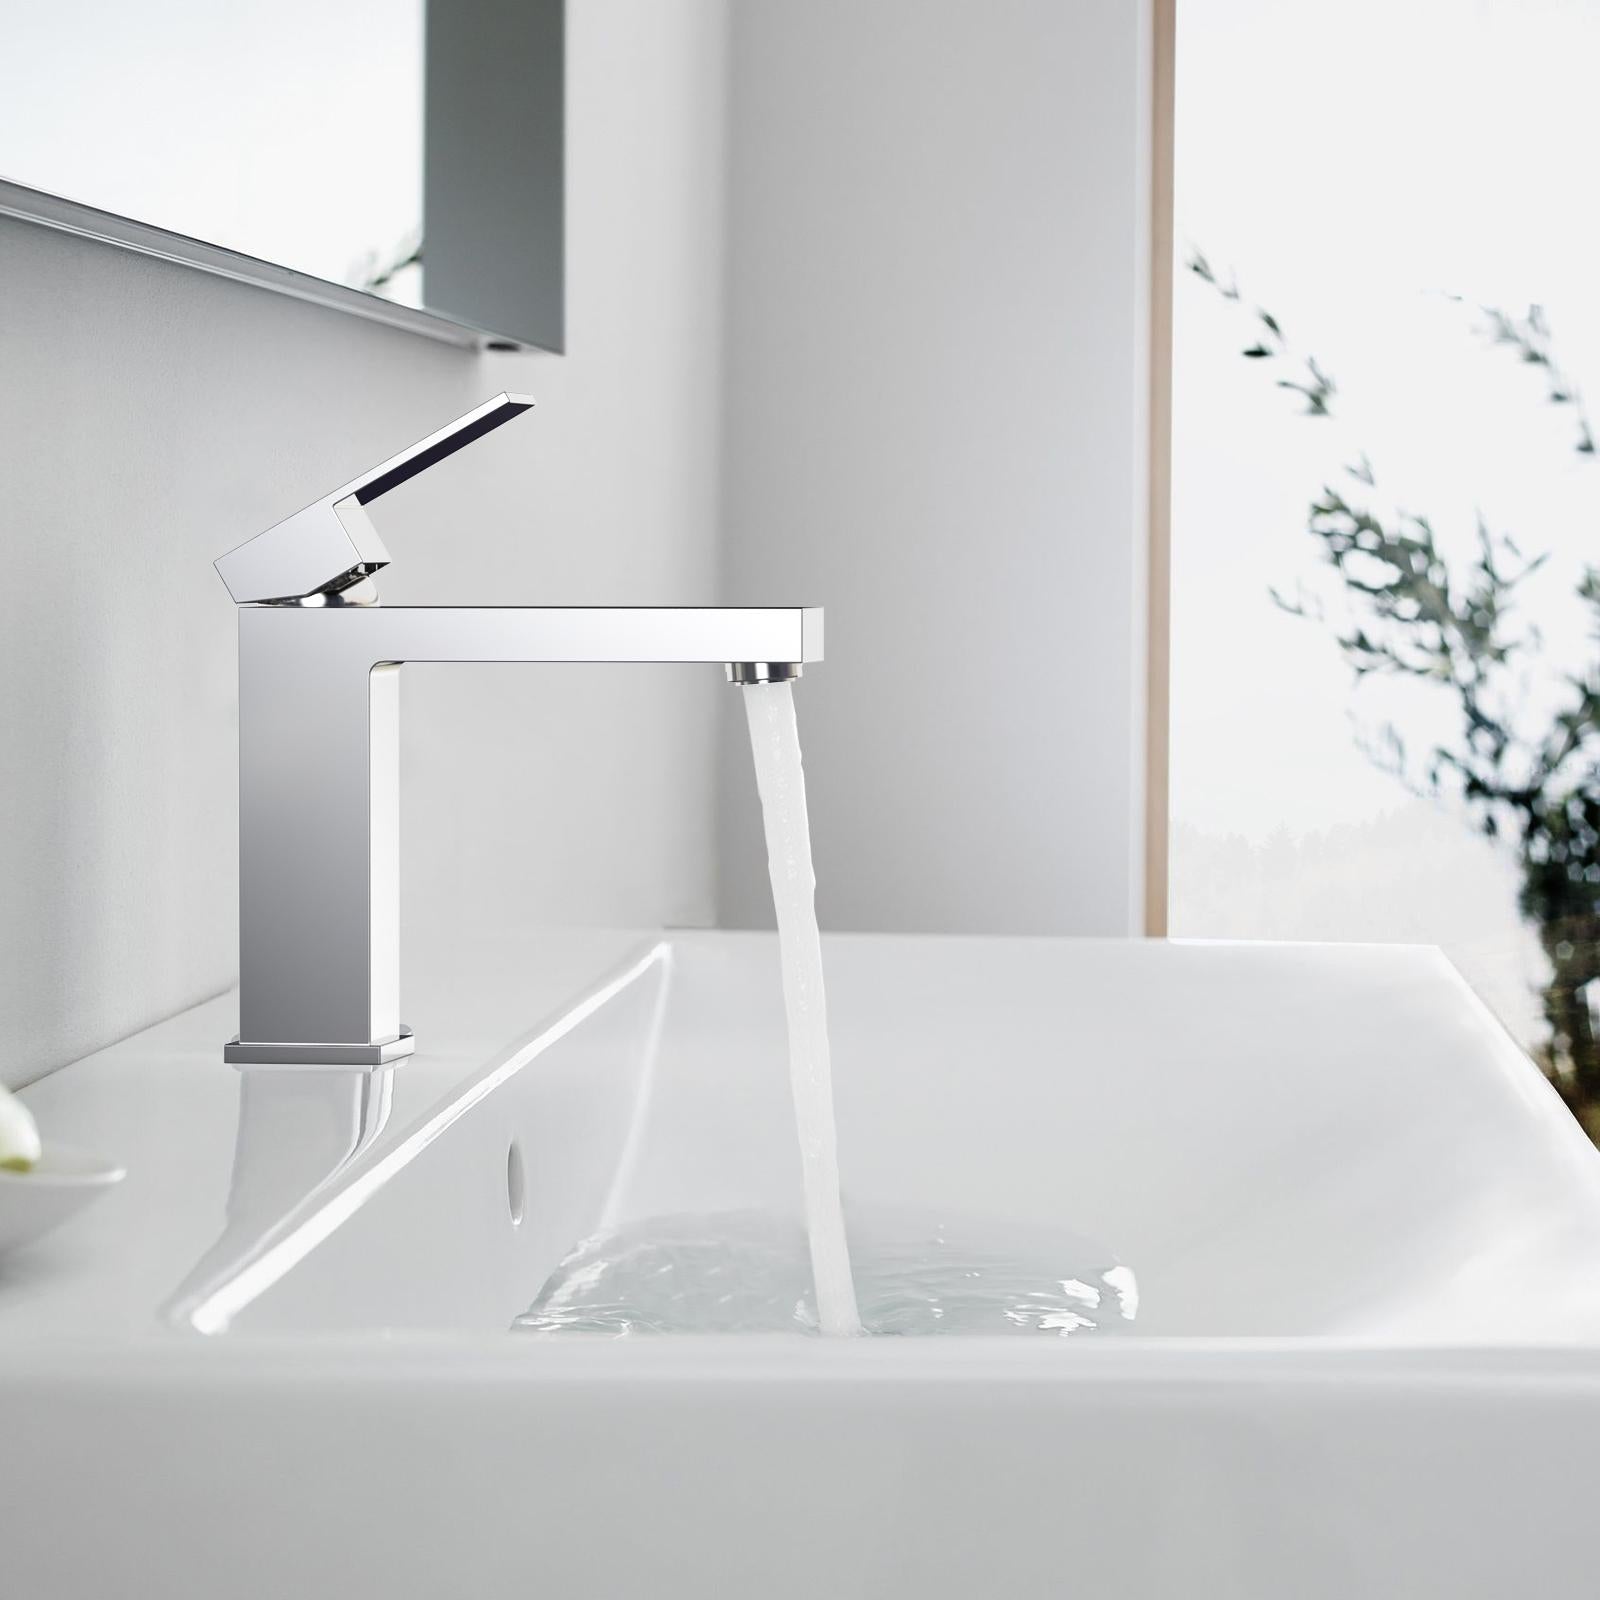 Chrome Bathroom Faucet Single Handle Brass Bathroom Sink Faucet Lavatory Faucet 1.2 GPM